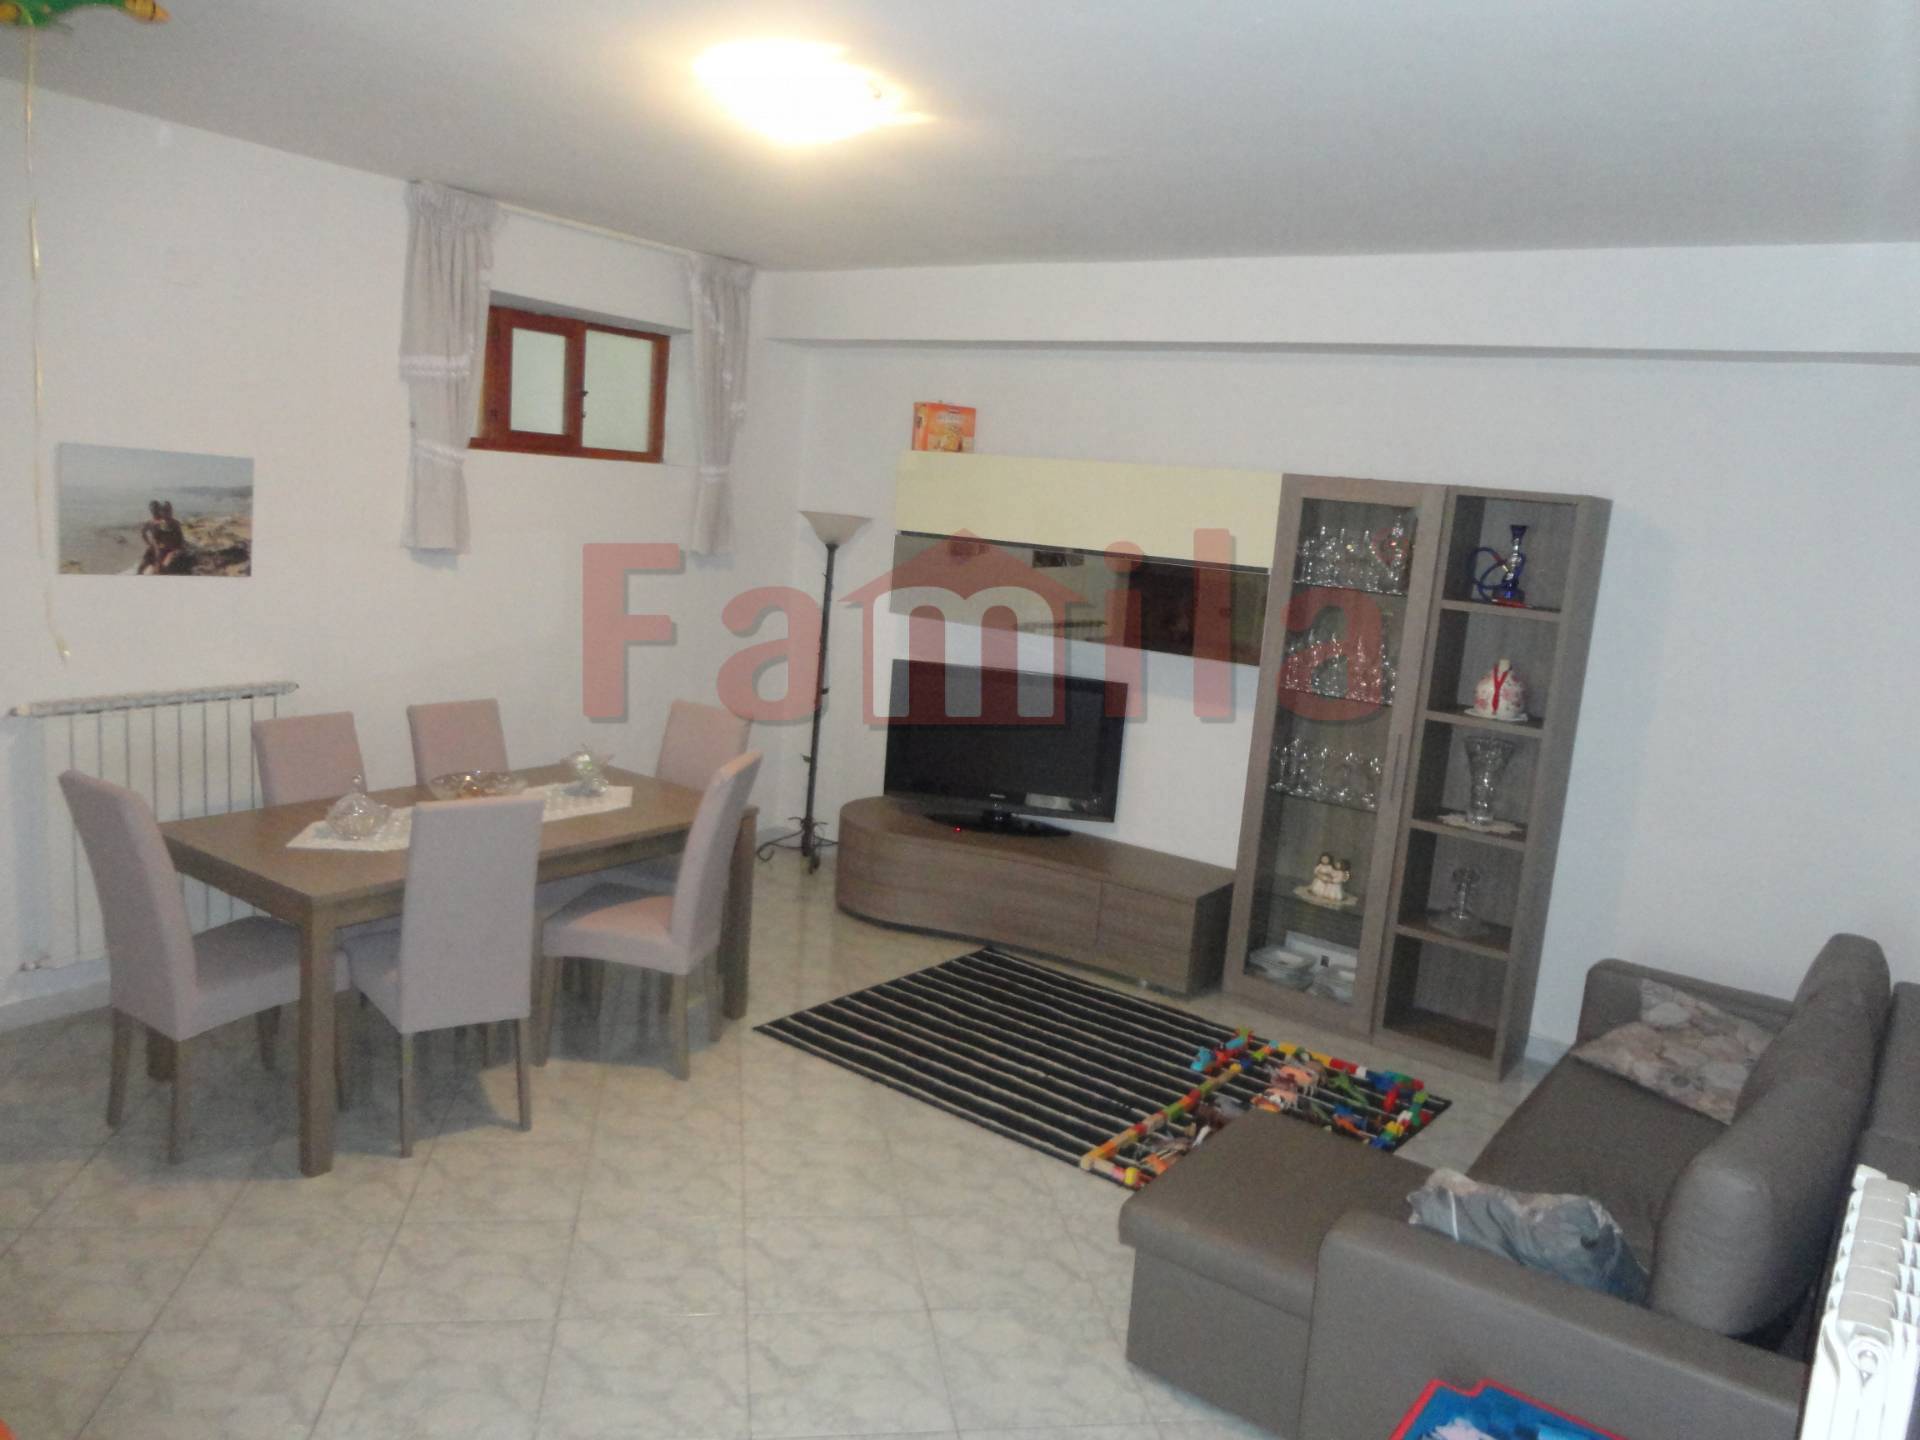 Appartamento in vendita a Sirignano, 3 locali, prezzo € 45.000 | CambioCasa.it